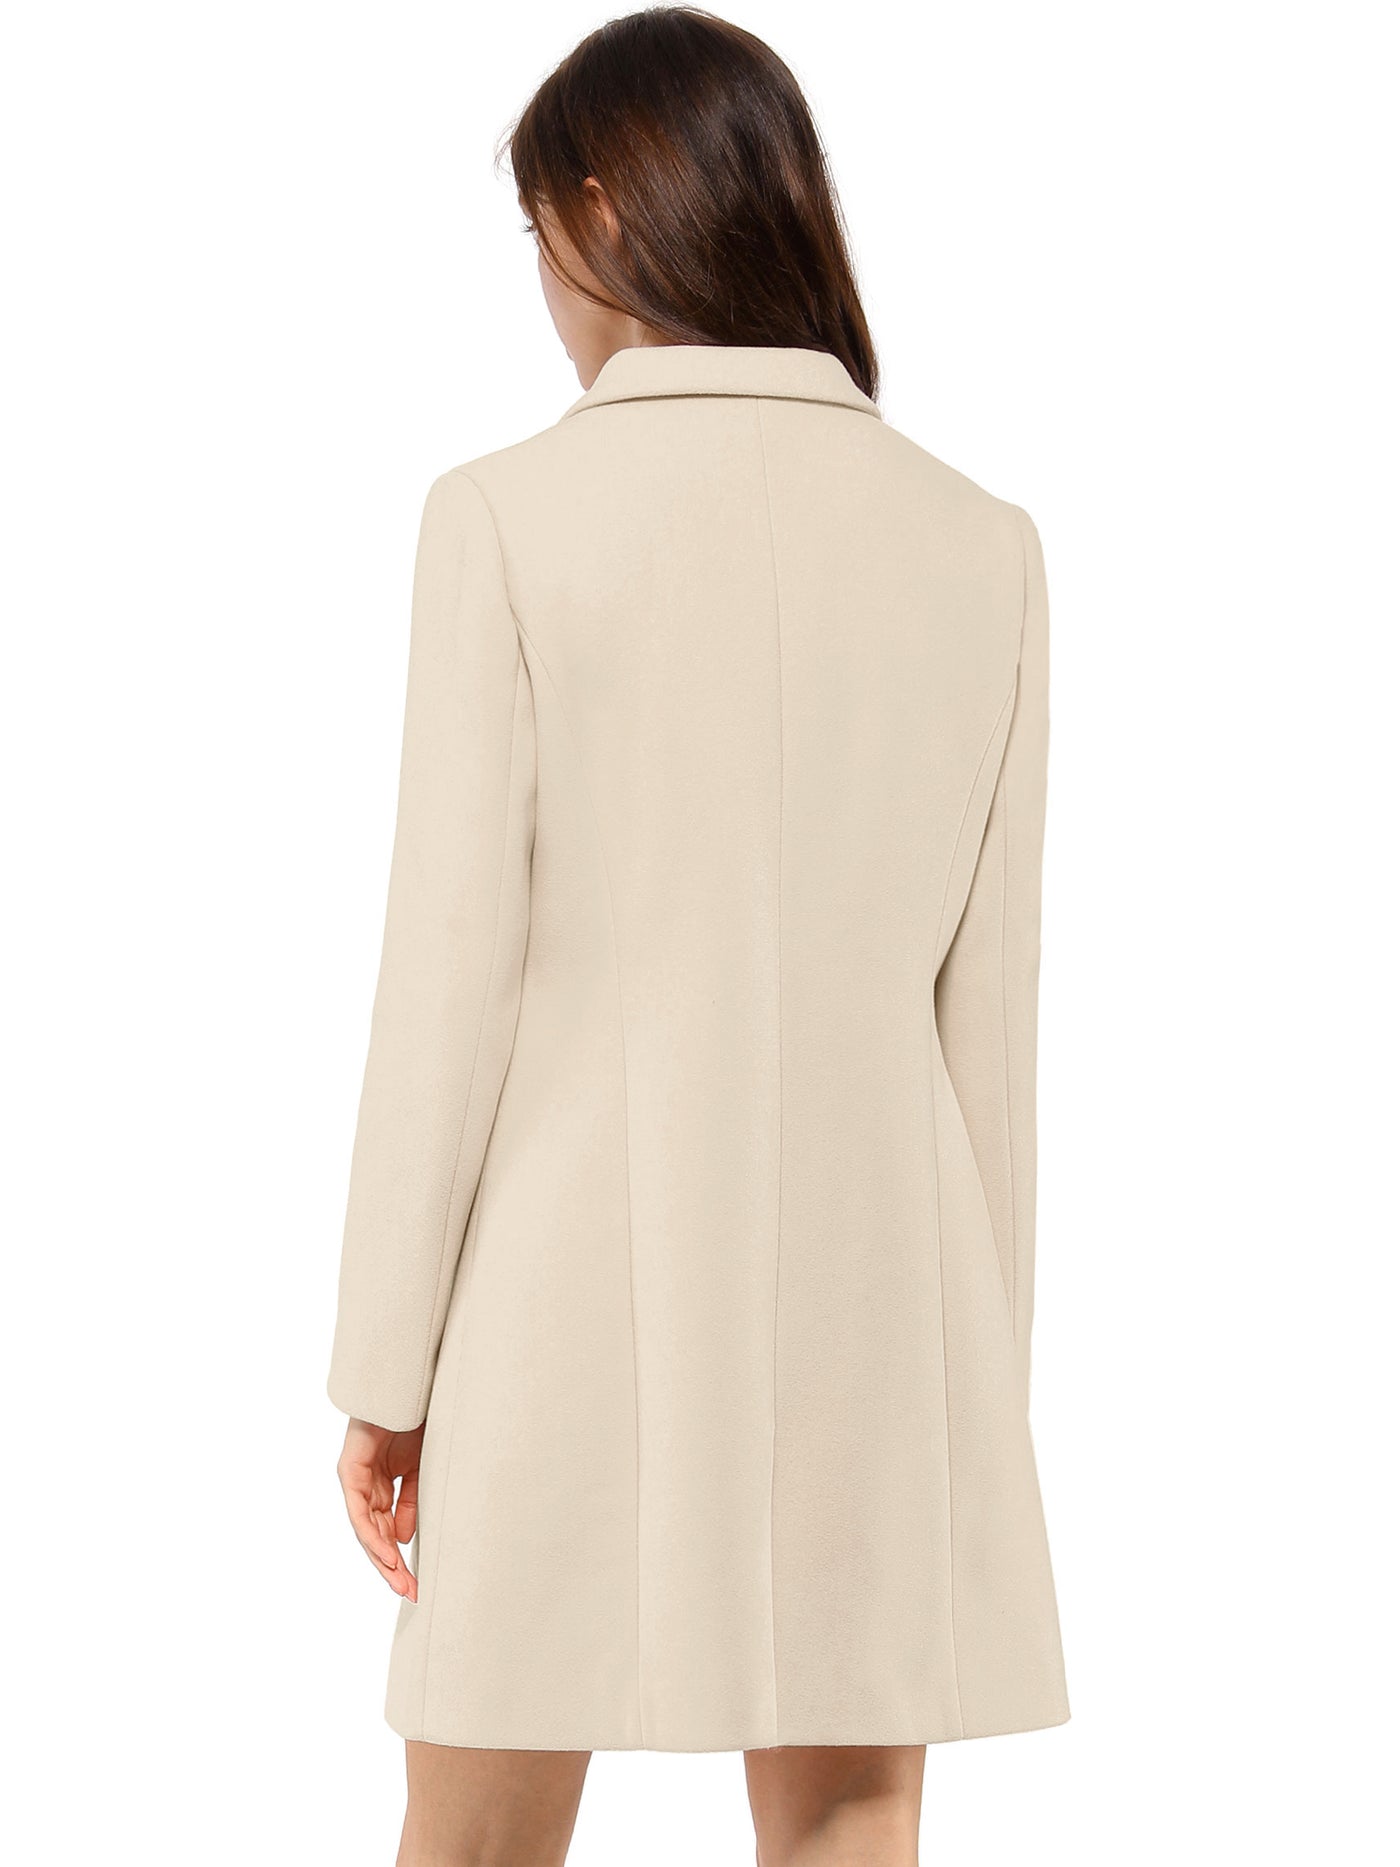 Allegra K Notched Lapel Single Breasted Outwear Winter Long Coat